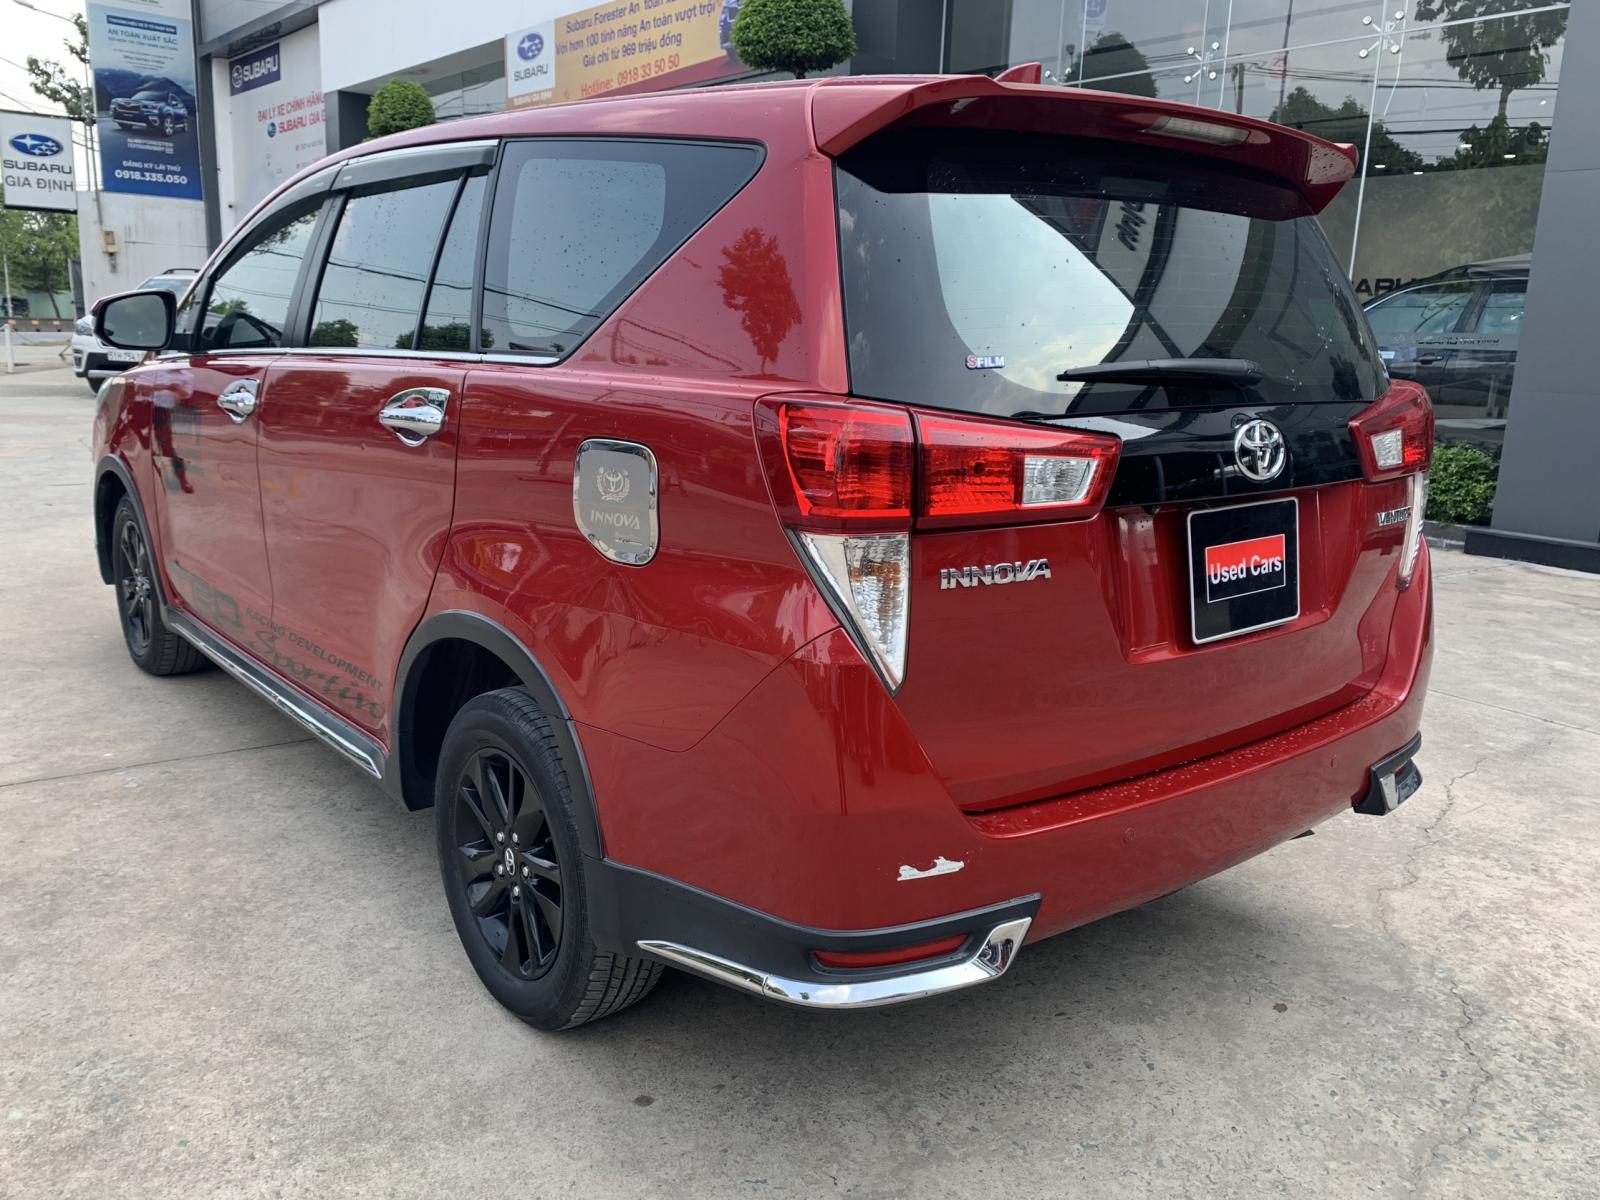 Toyota Innova 2018 - Bán ô tô Toyota Innova Venturer đời 2018, màu đỏ biển SG - 70.000km full option giá còn fix mạnh